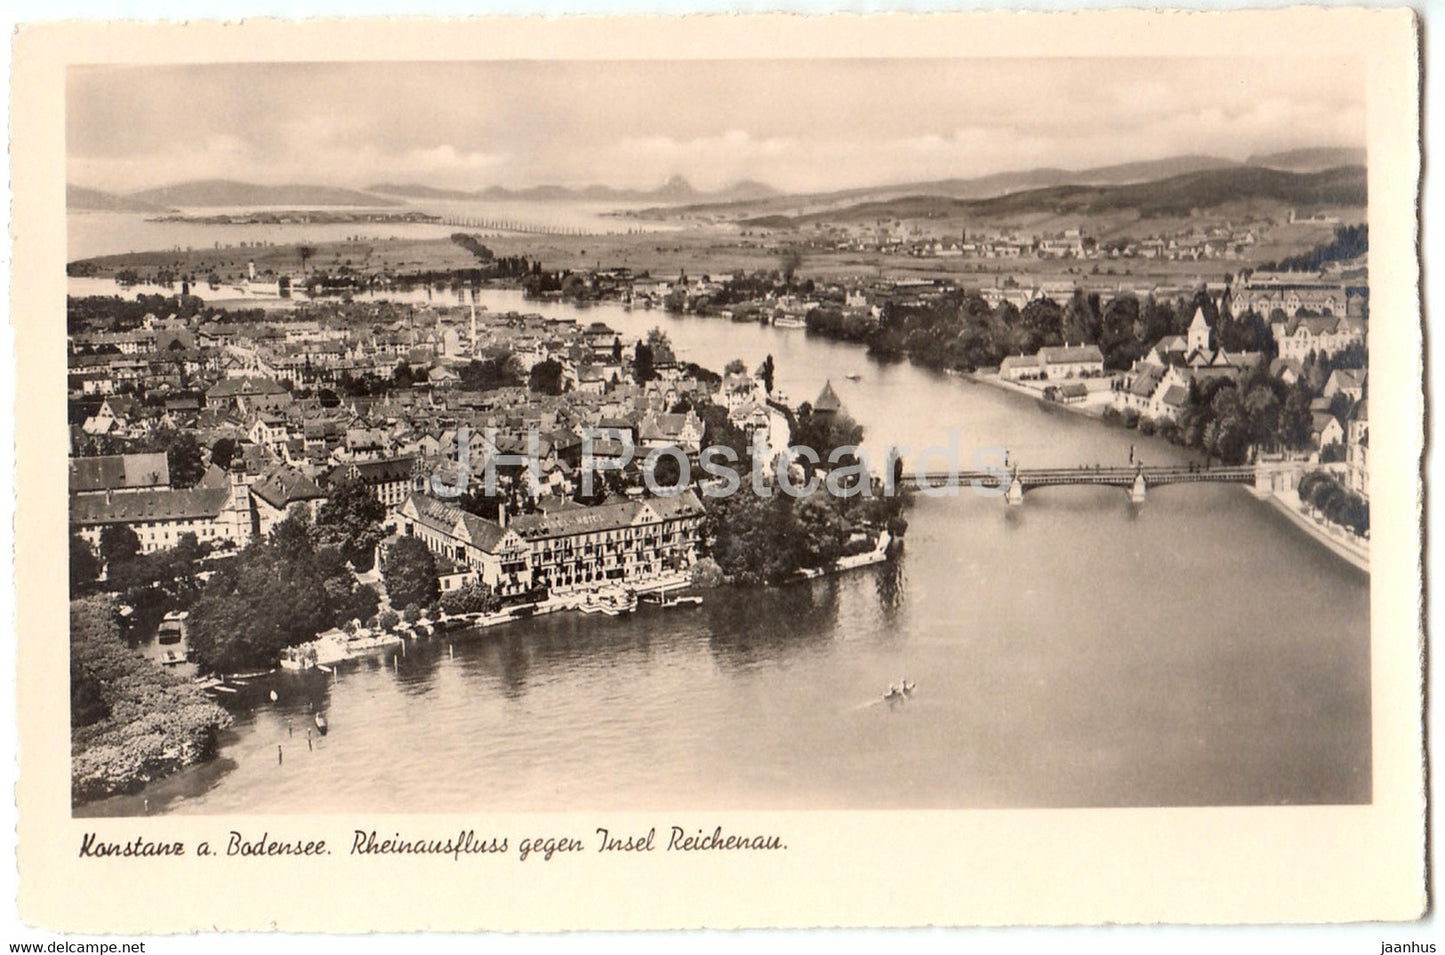 Konstanz a Bodensee - Rheinausfluss gegen Insel Reichenau - Germany - unused - JH Postcards